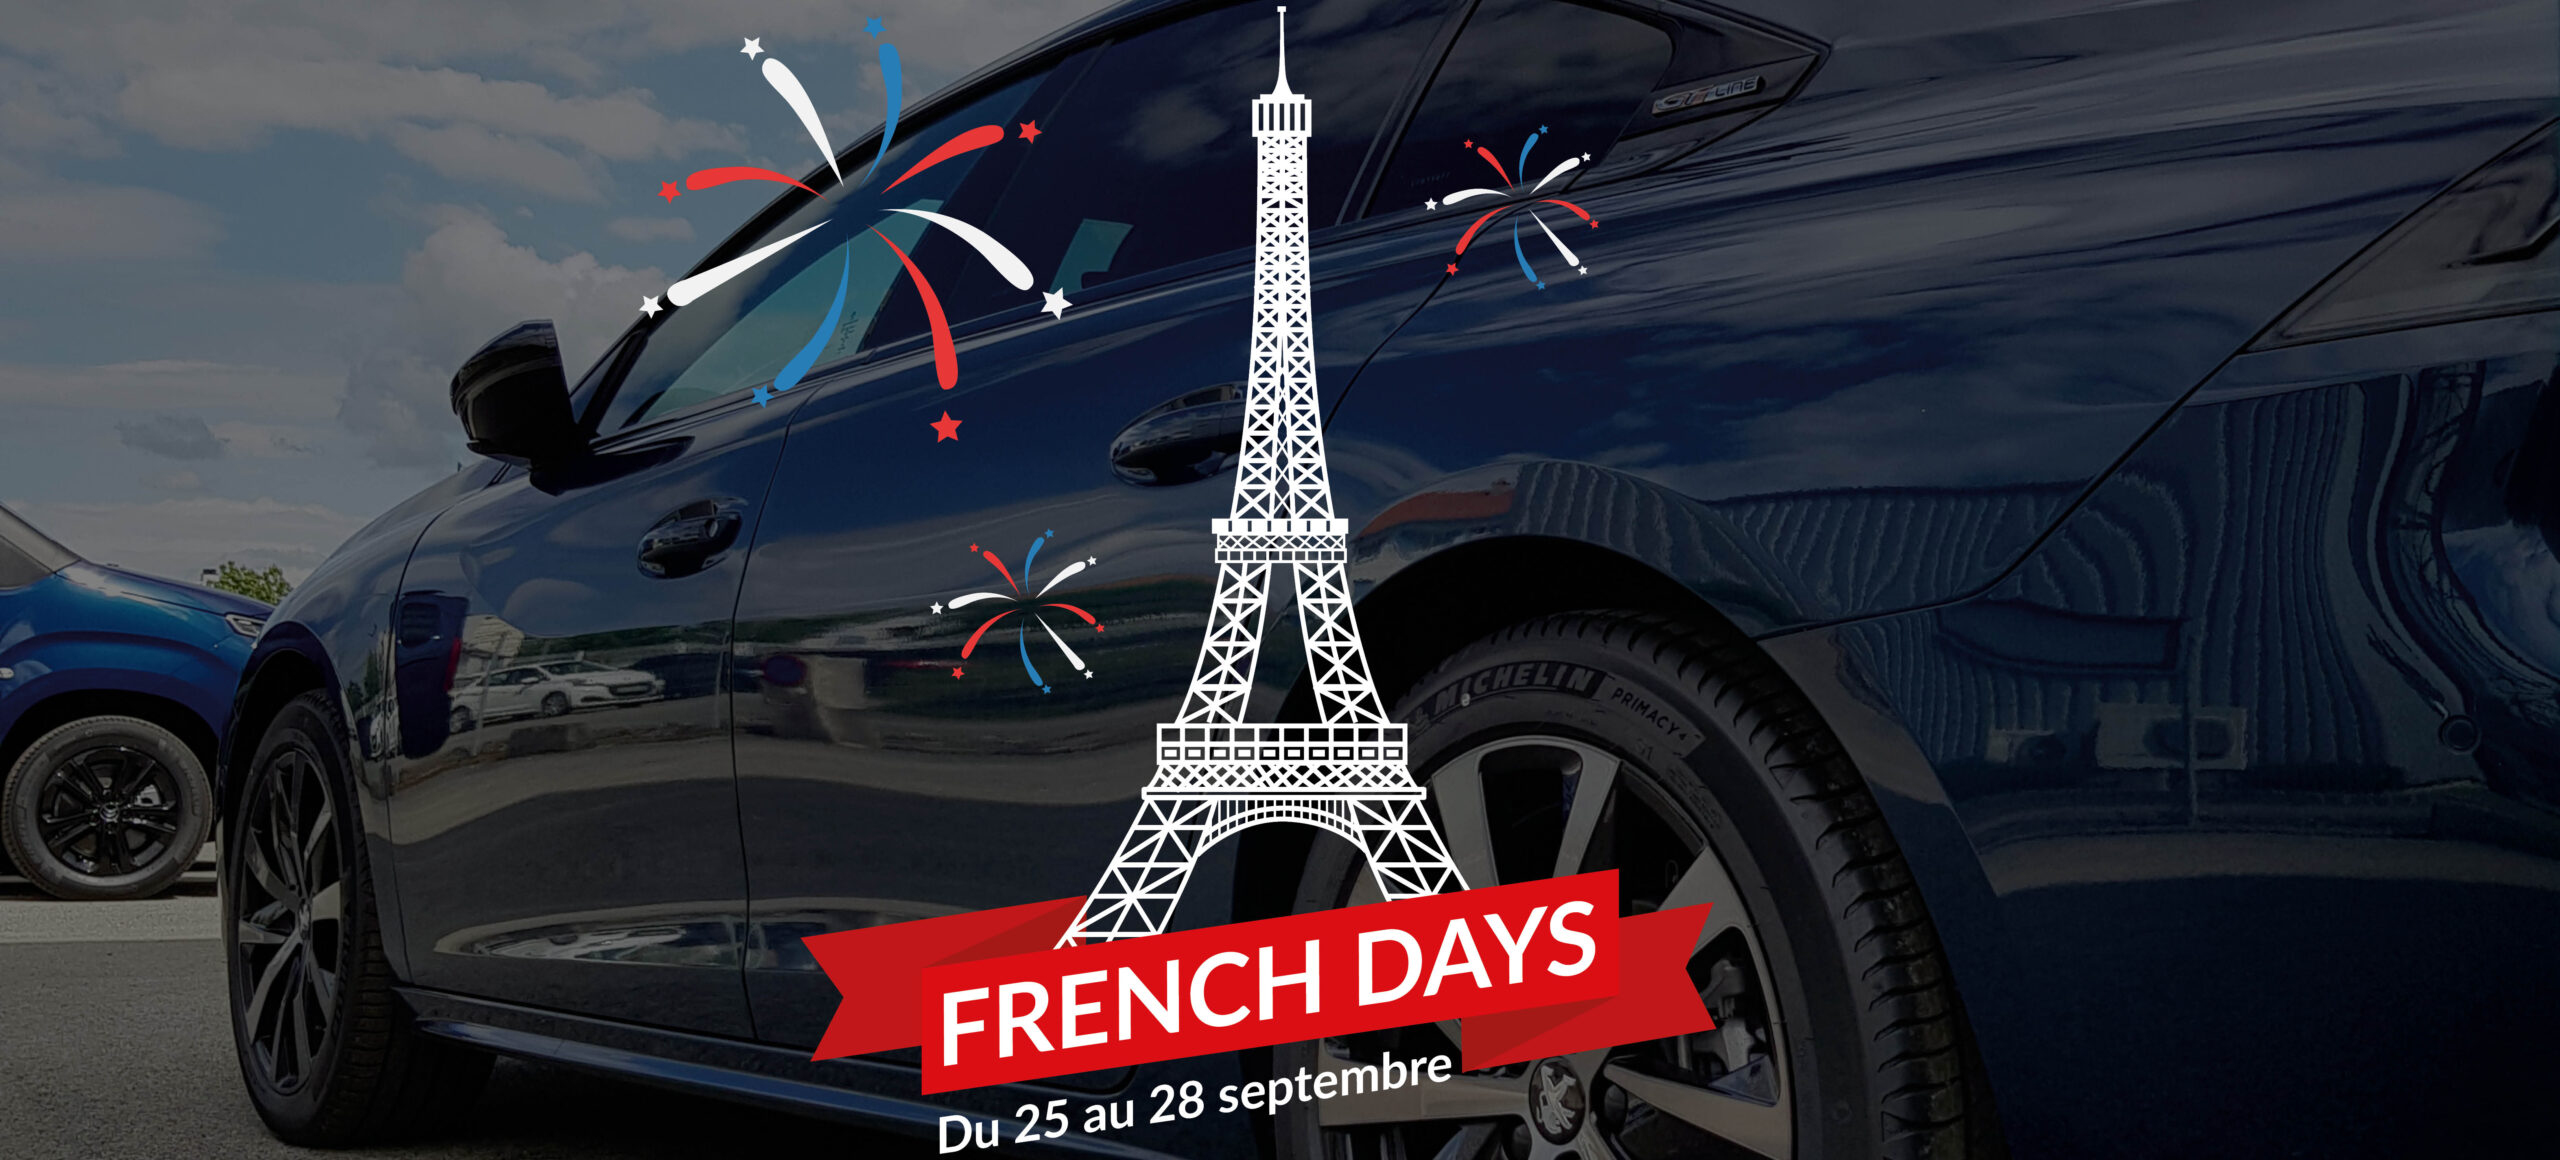 French Days : trouvez votre véhicule neuf à petit prix !